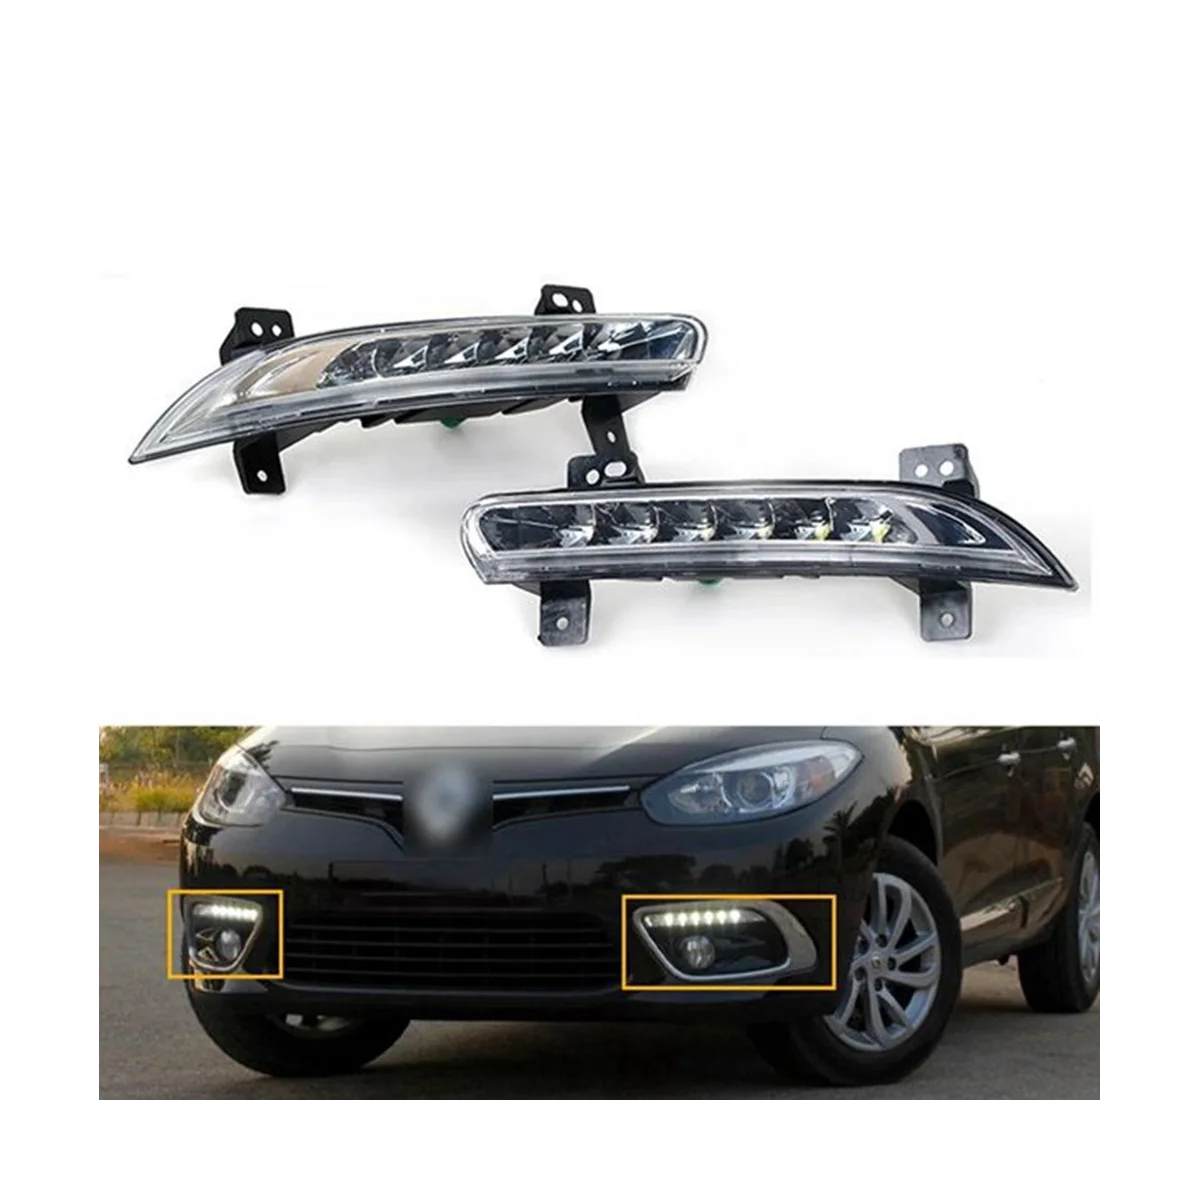 

Автомобильный передний правый фонарь, противотуманный фонарь для Renault Fluence 2014 +, автомобильная лампа для вождения, дневные ходовые огни, лампа-бампер